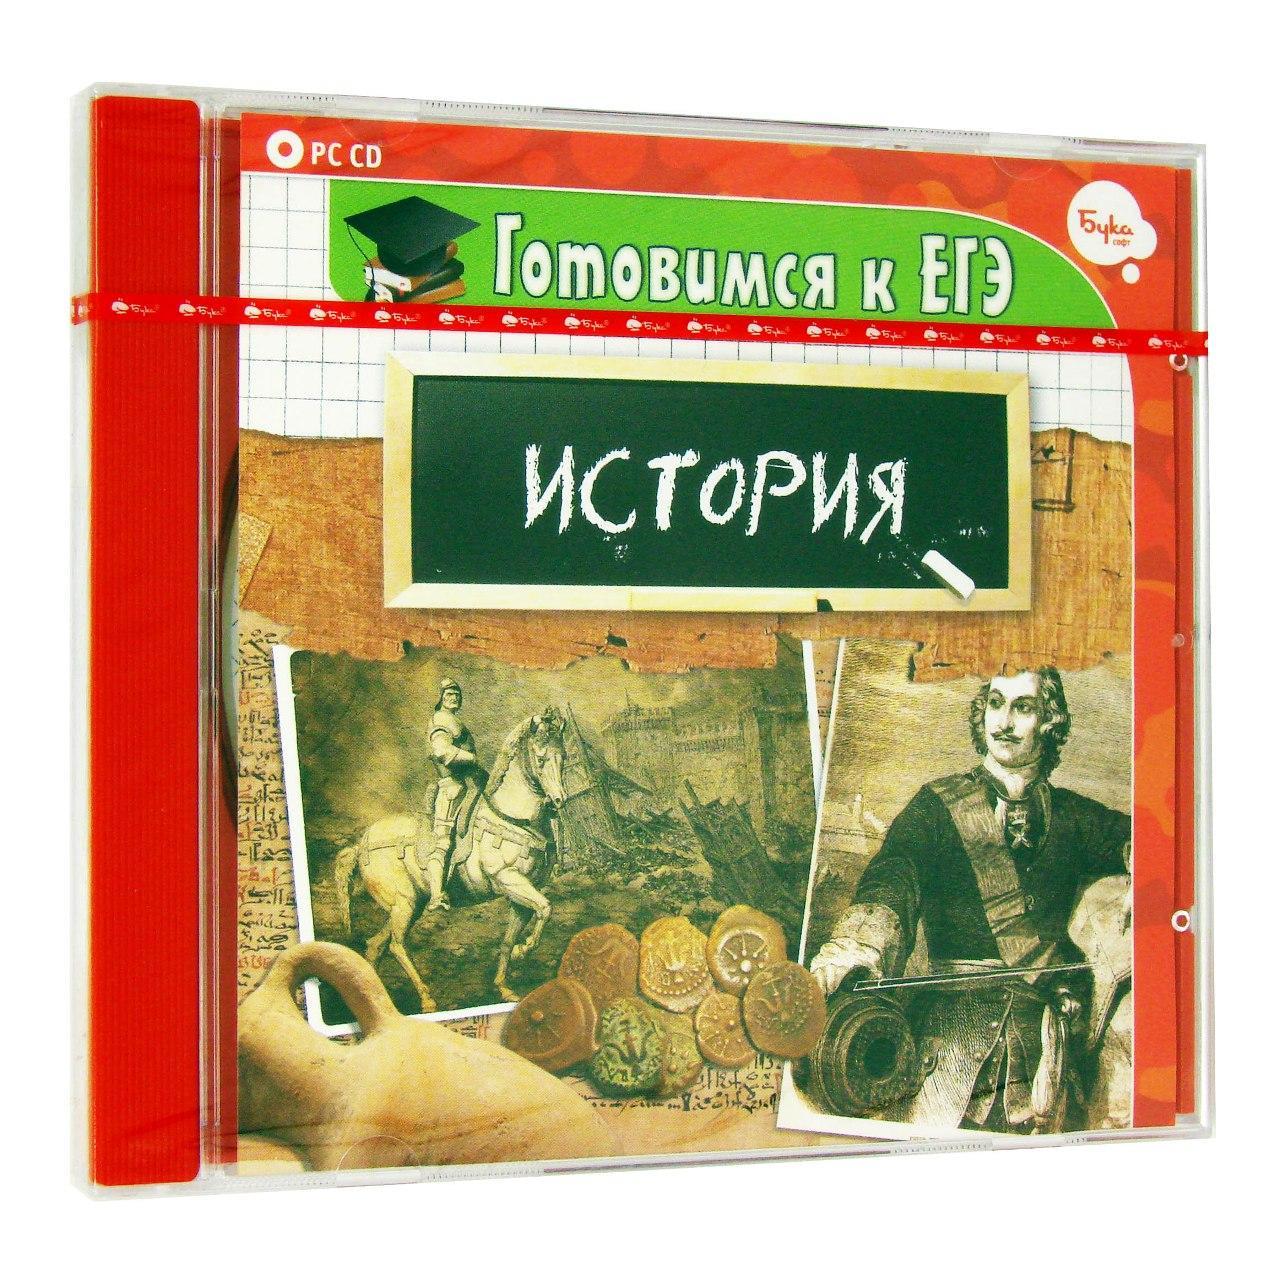 Компьютерный компакт-диск Готовимся к ЕГЭ. История (ПК), фирма "Бука", 1CD